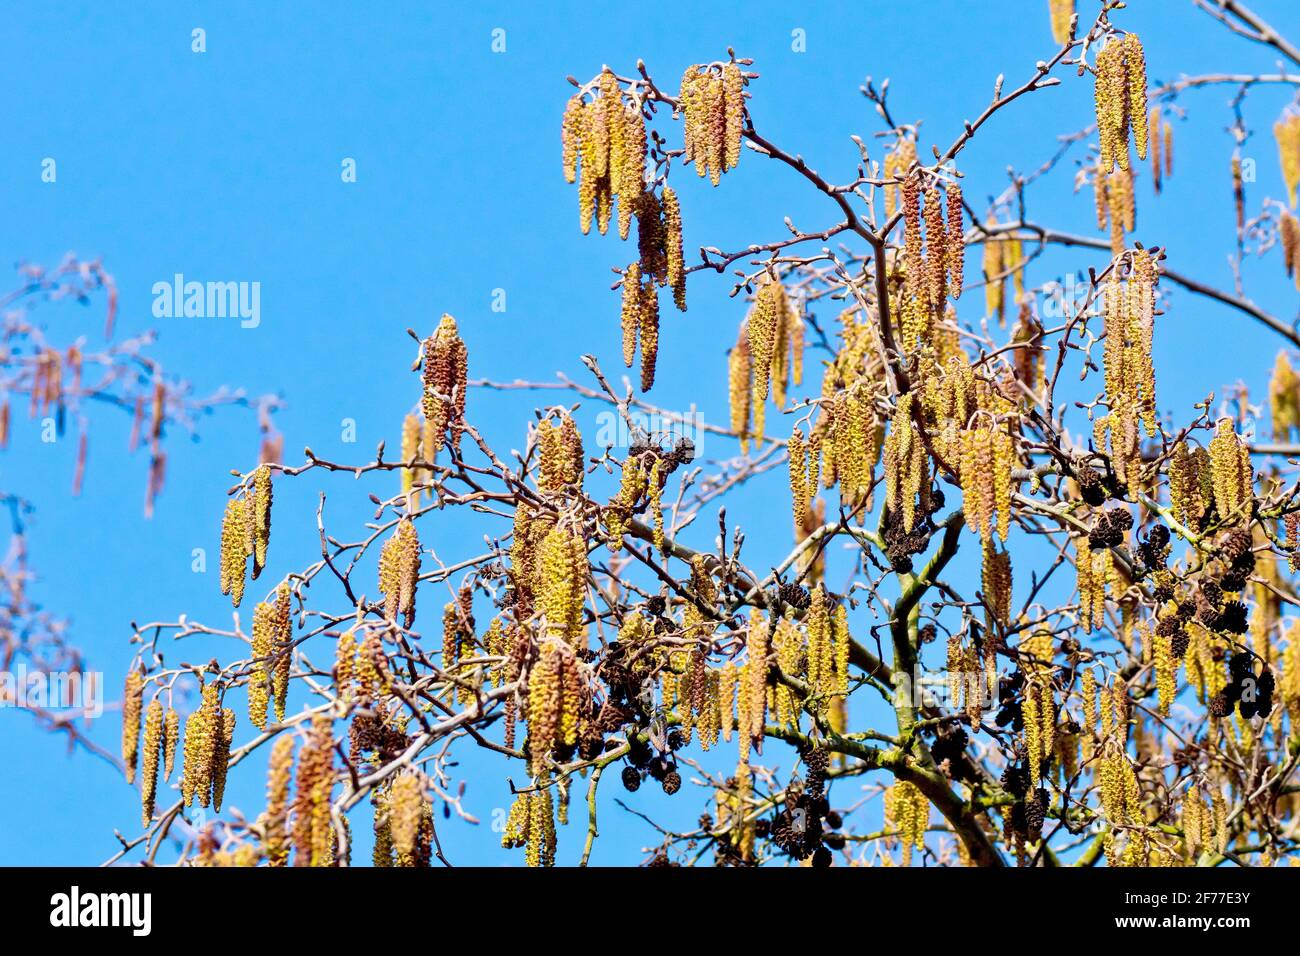 Alder catkins (alnus glutinosa), mostrando una masa de catenetas macho creciendo con los conos de semilla del año pasado en las ramas altas de un árbol contra un cielo azul. Foto de stock